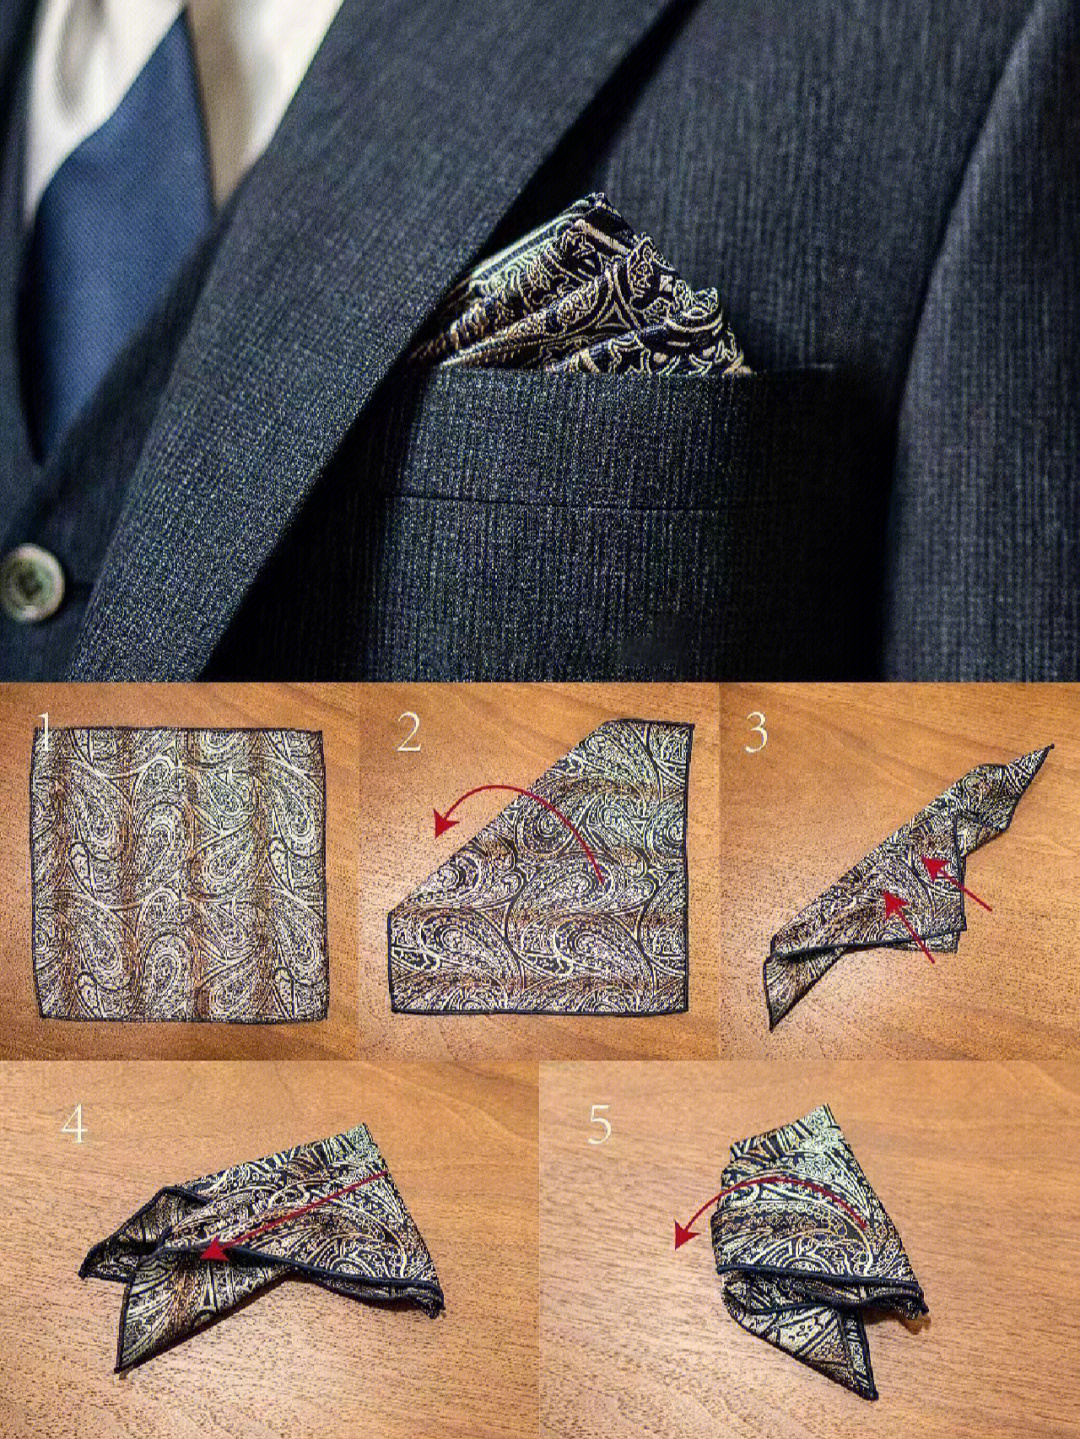 口袋巾的折叠方法图片